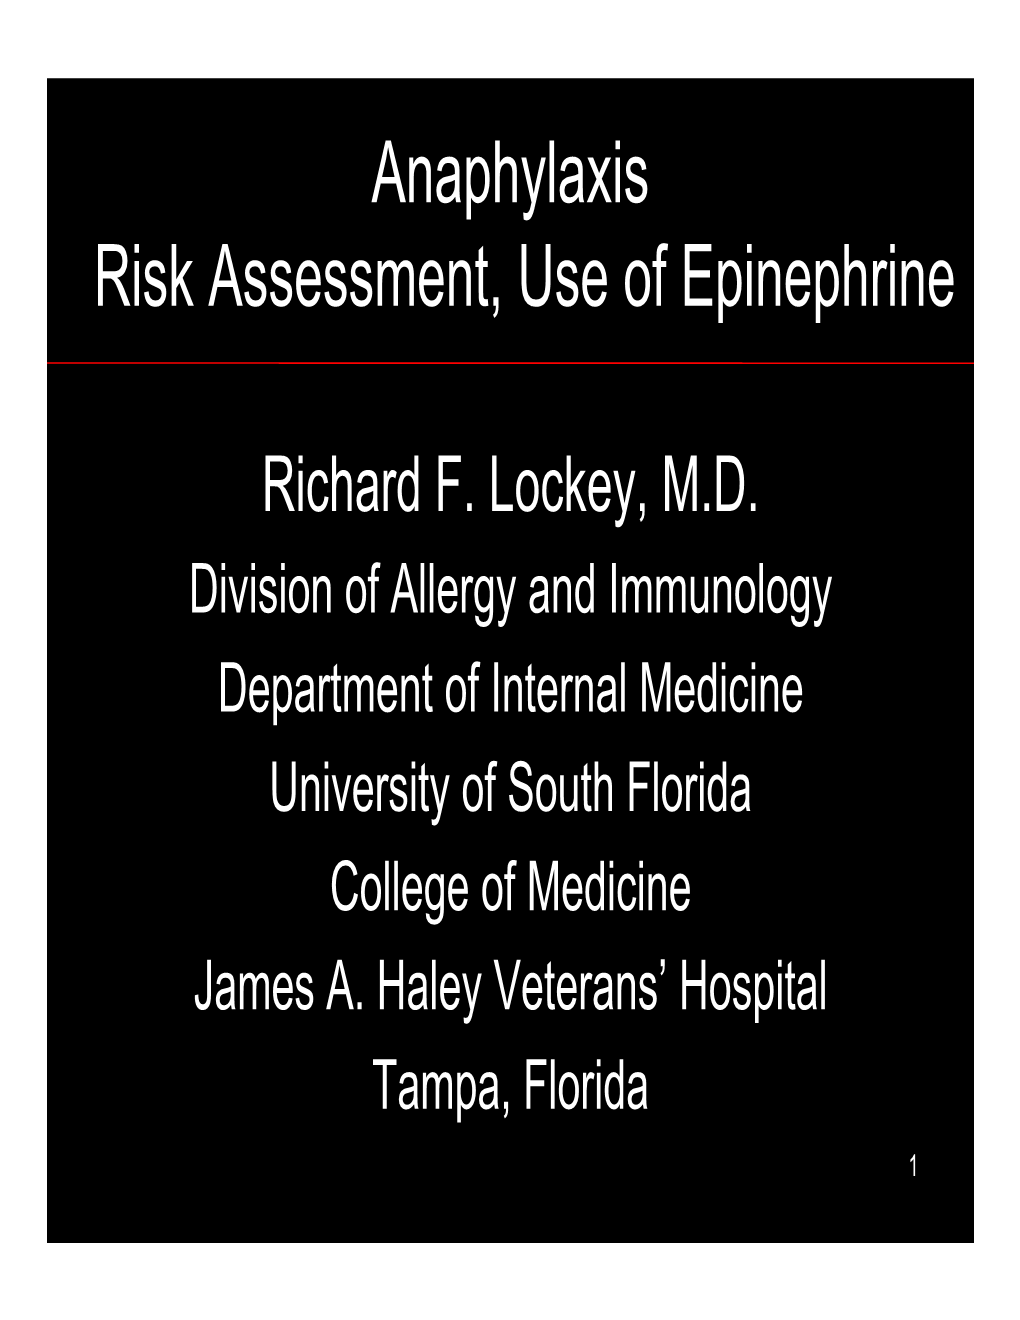 Treatment of Anaphylaxis-Lockey